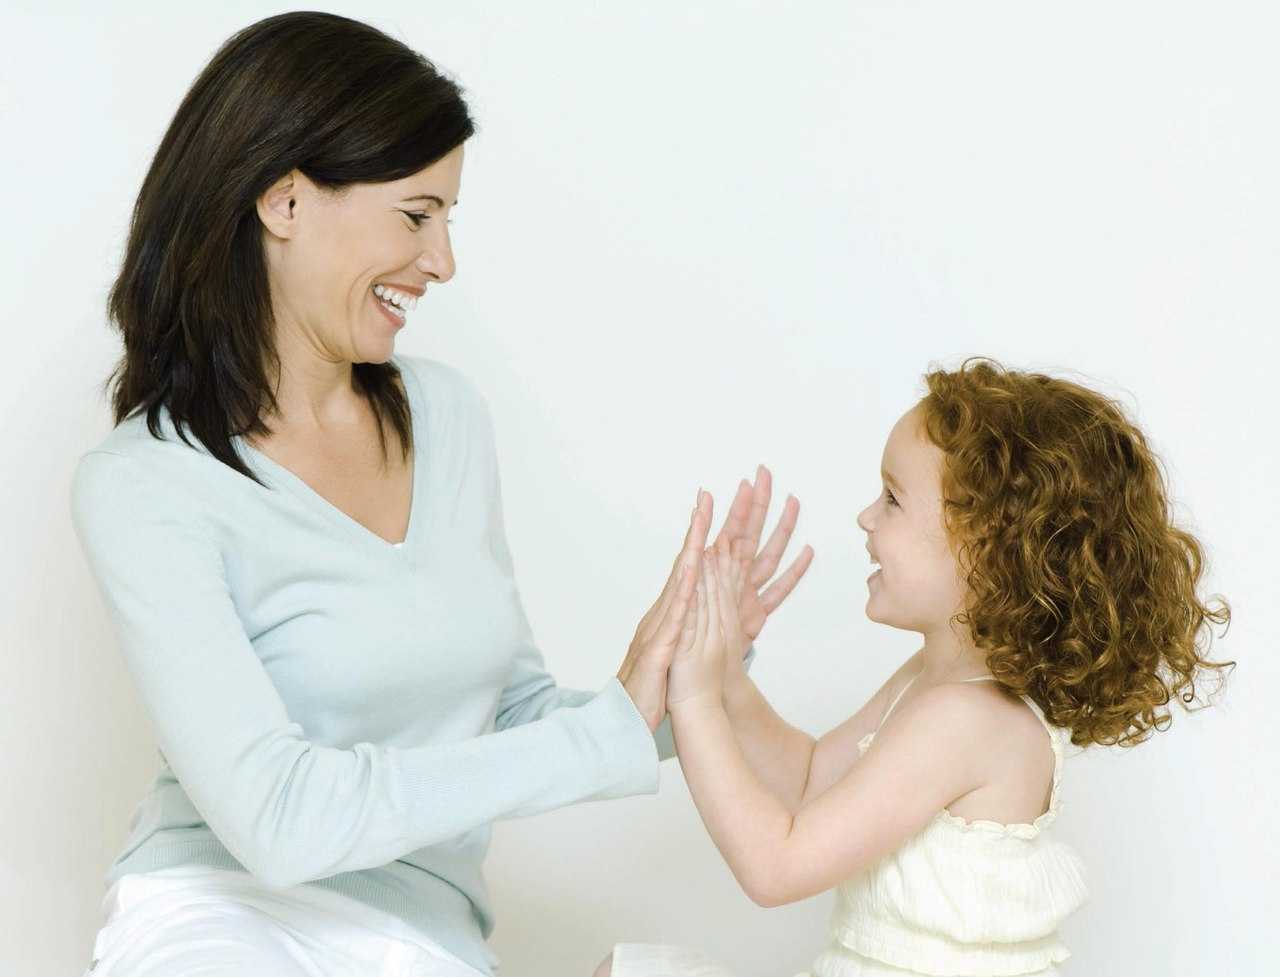 Советы родителям: как и во что играть с ребенком в 2 года